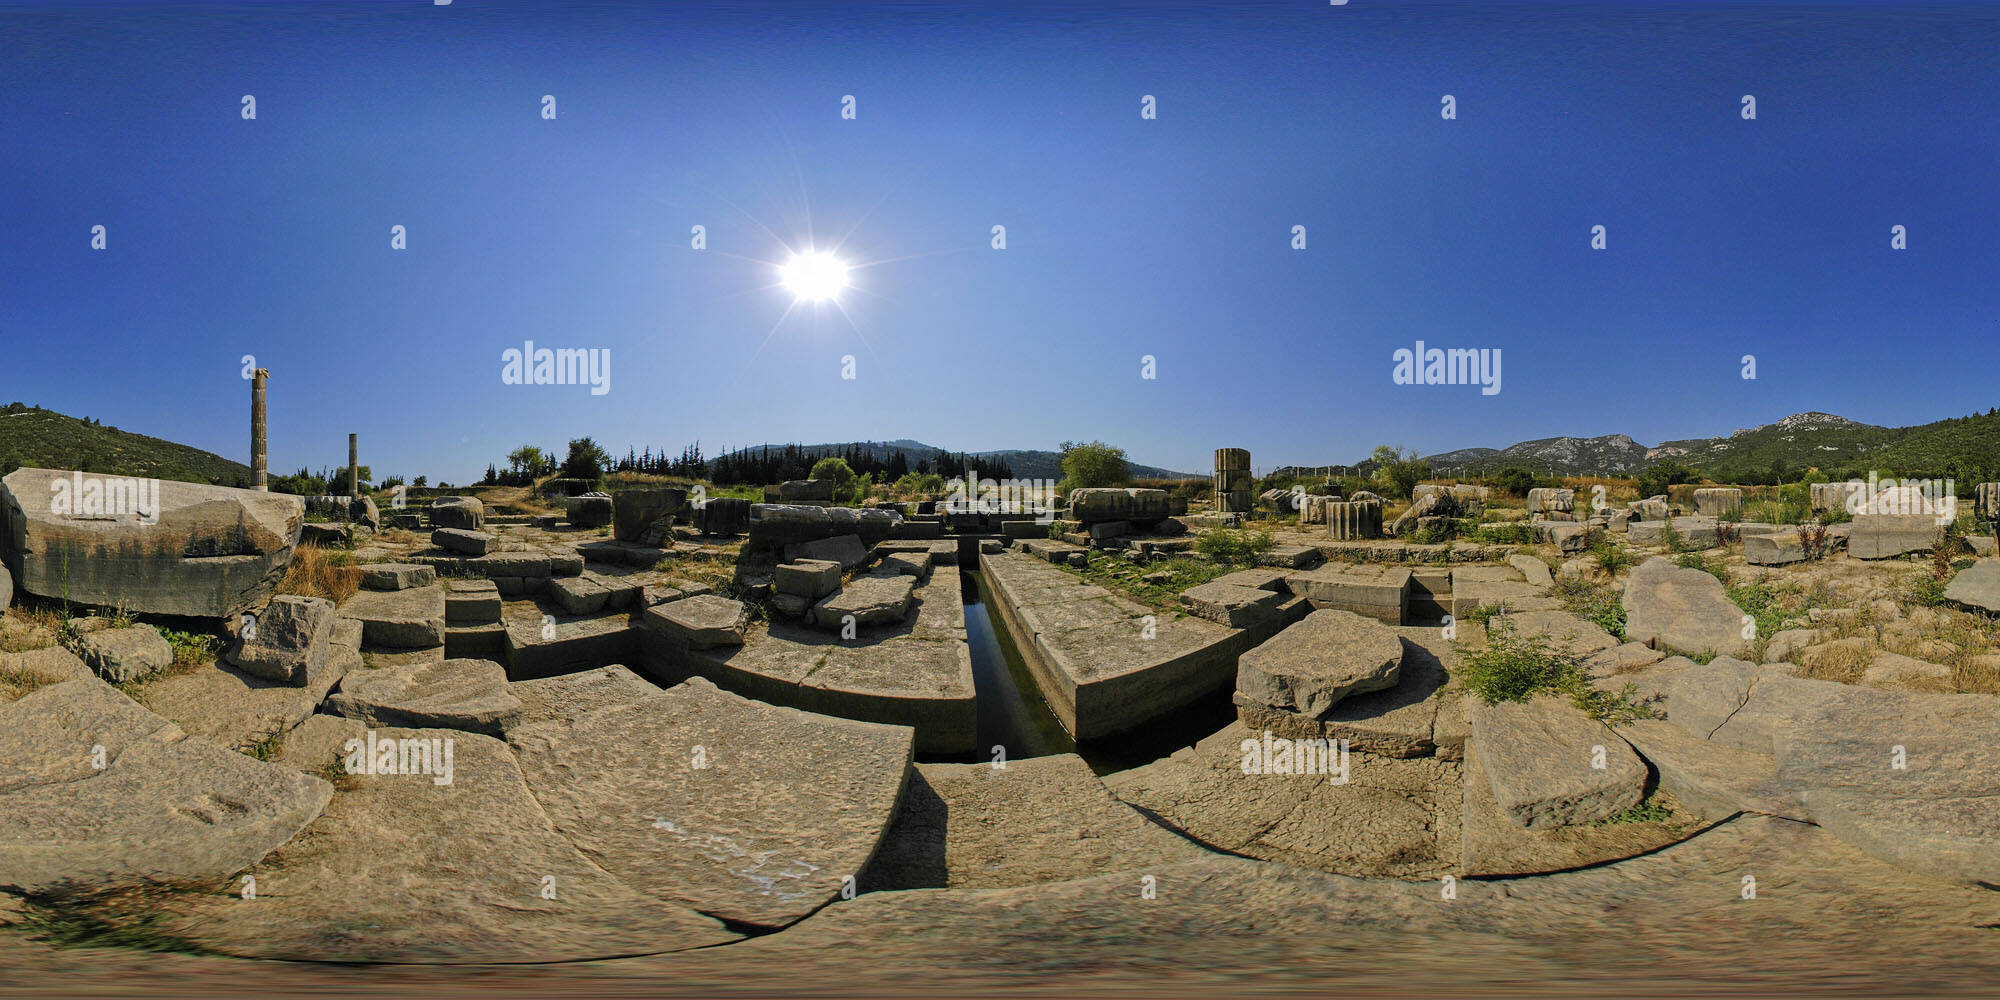 Vista panorámica en 360 grados de Klaros